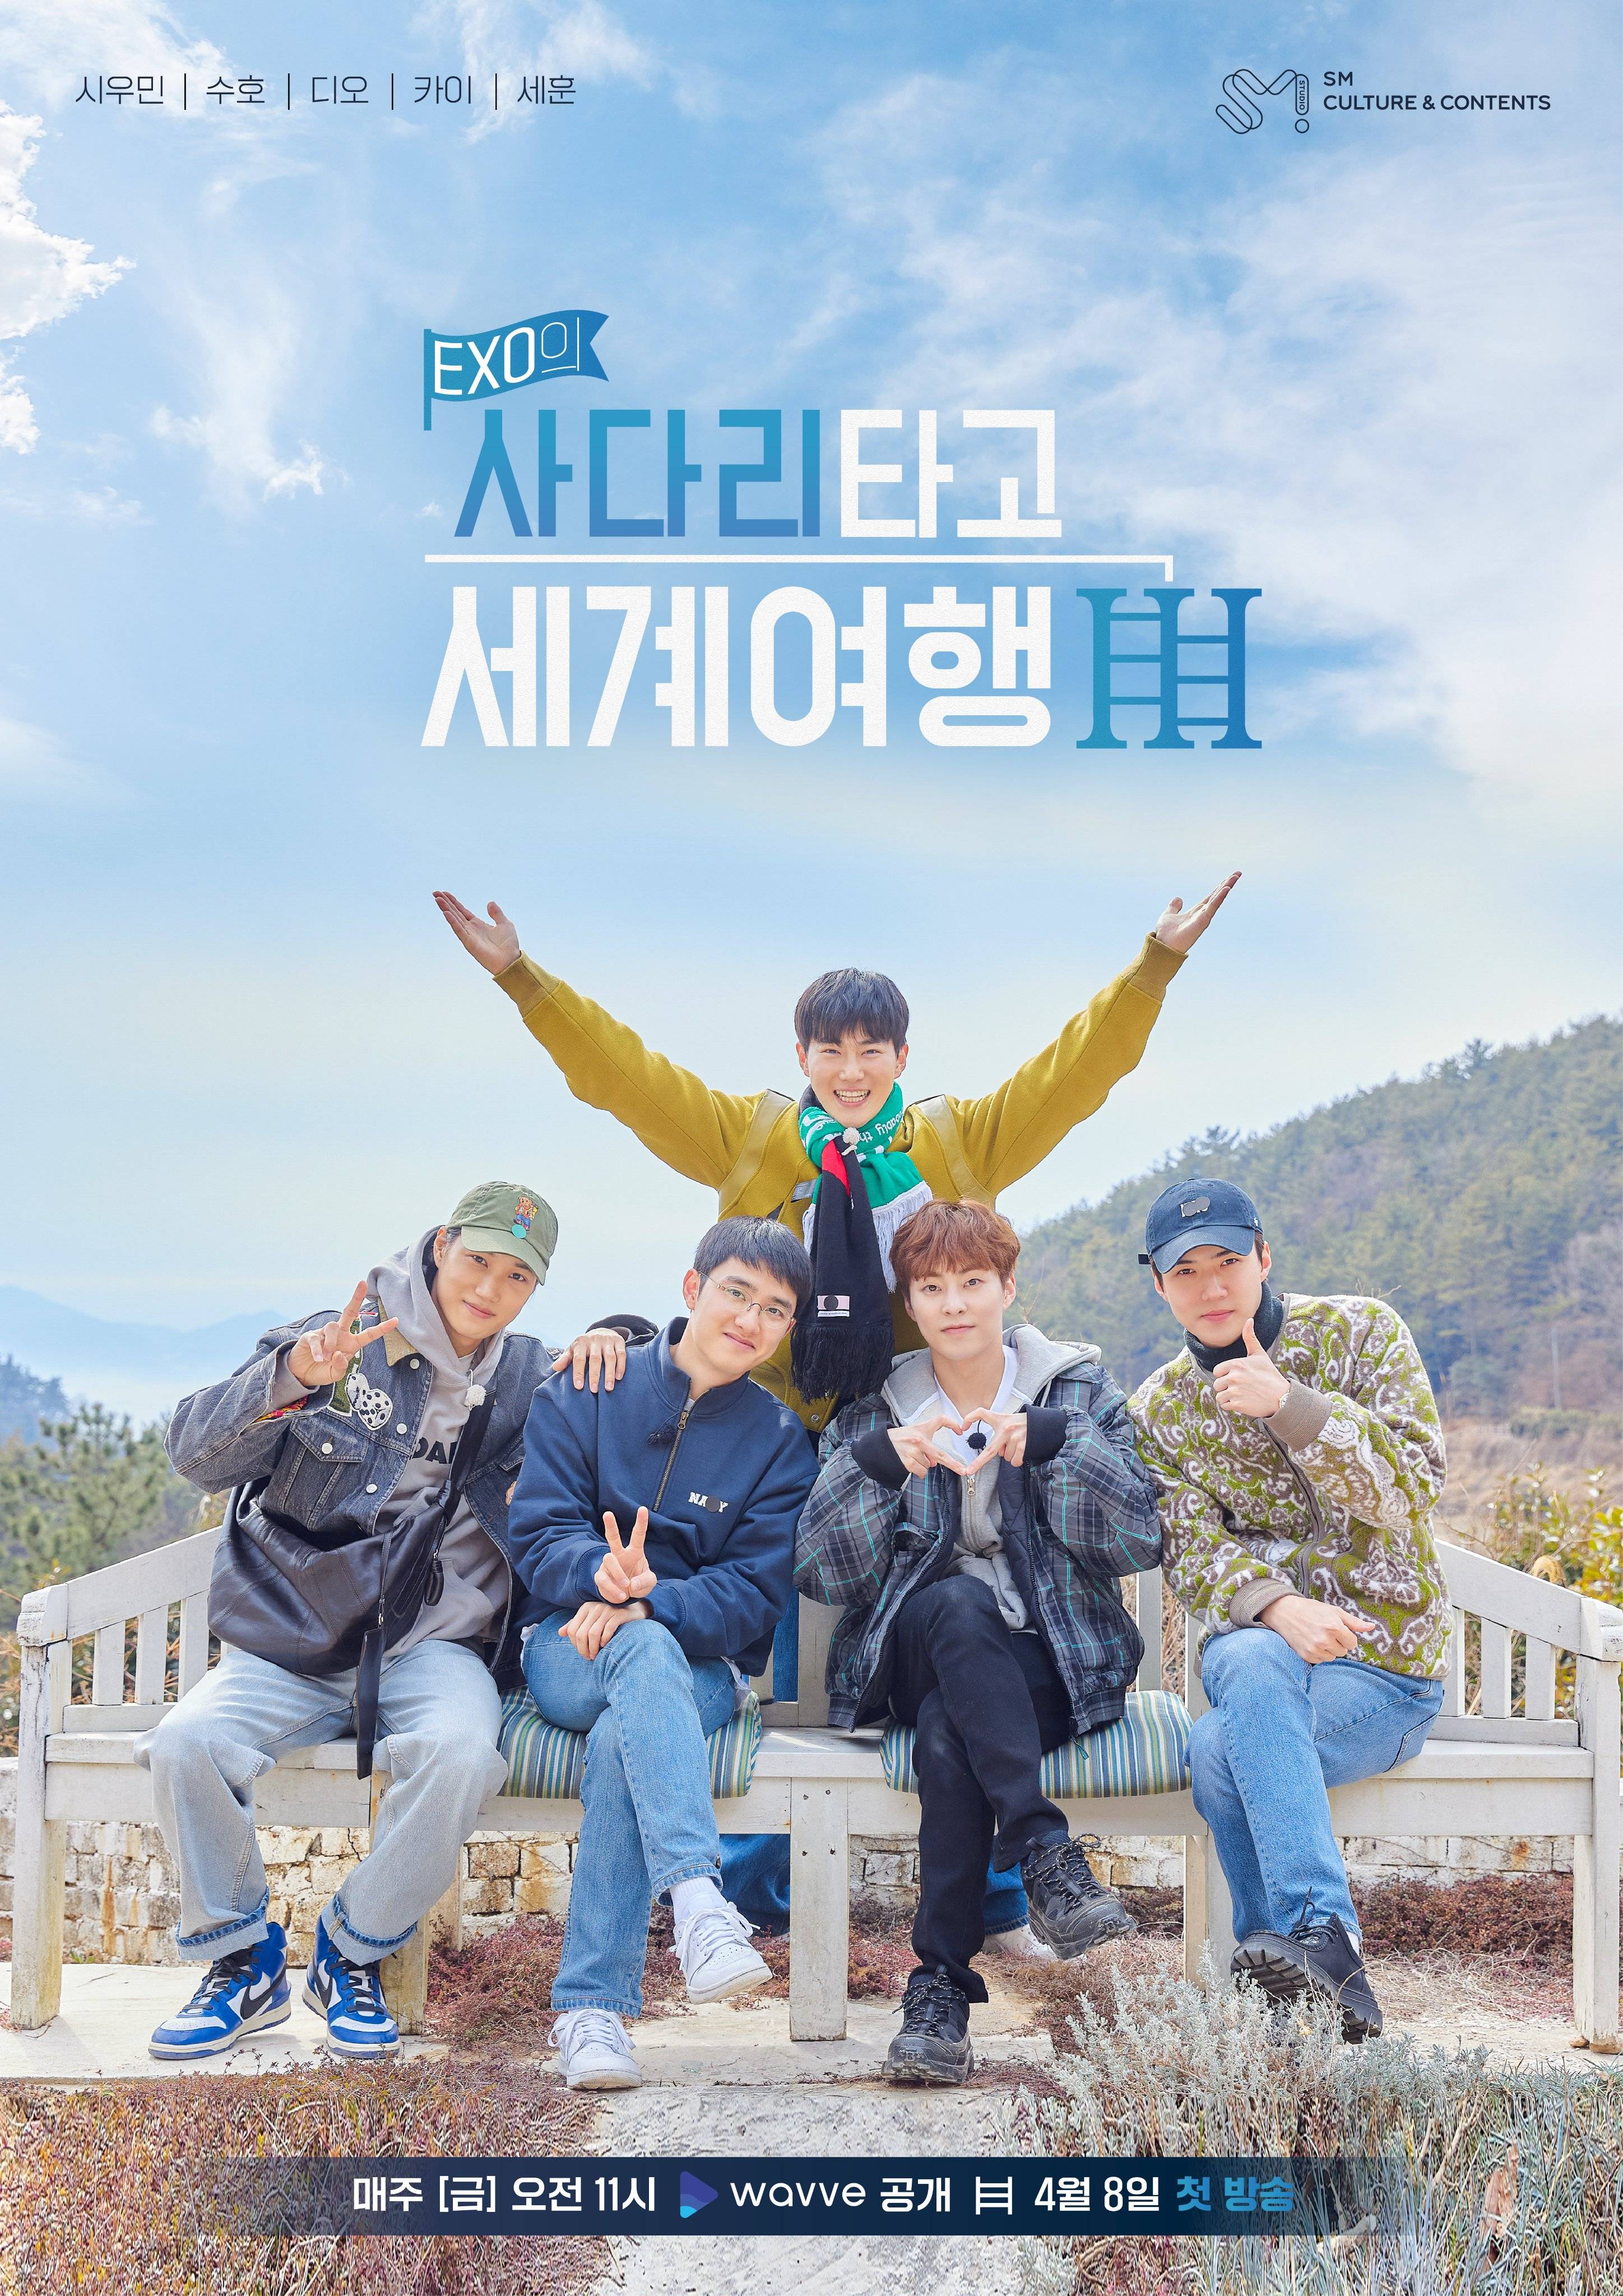 3-й сезон «Travel the World on EXO's Ladder»: дата премьеры и главный постер реалити-шоу